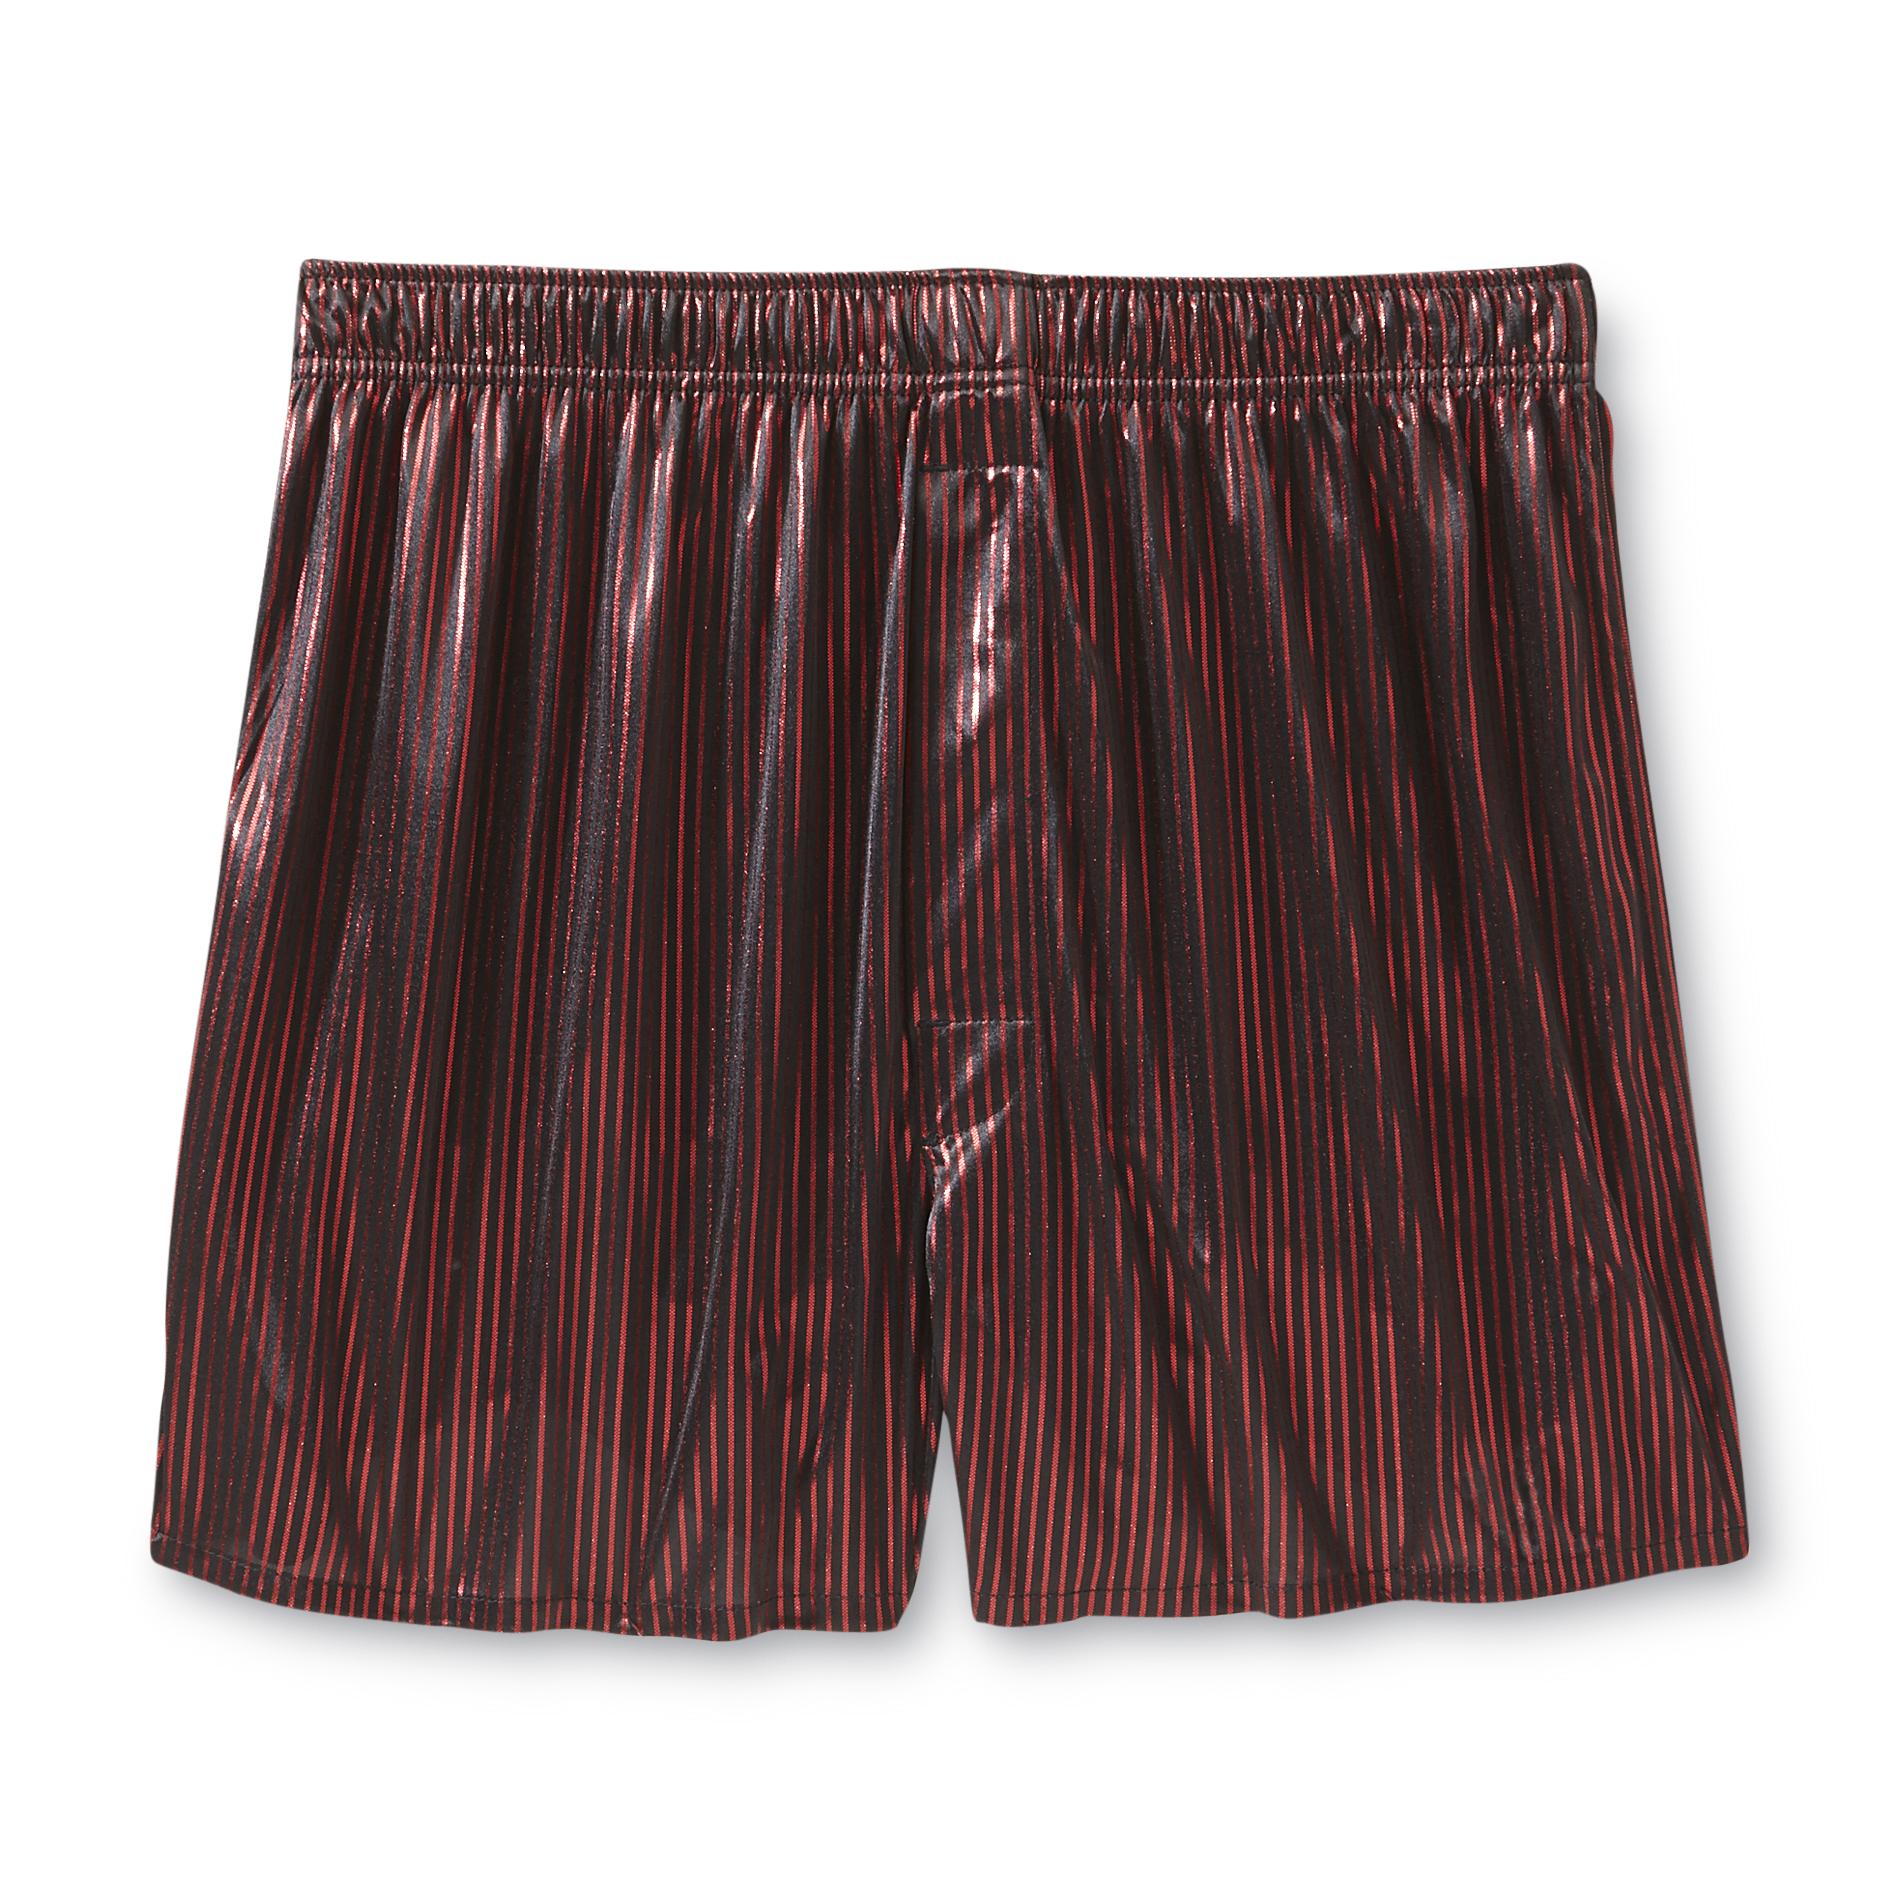 Joe Boxer Men's Boxer Shorts - Pinstriped